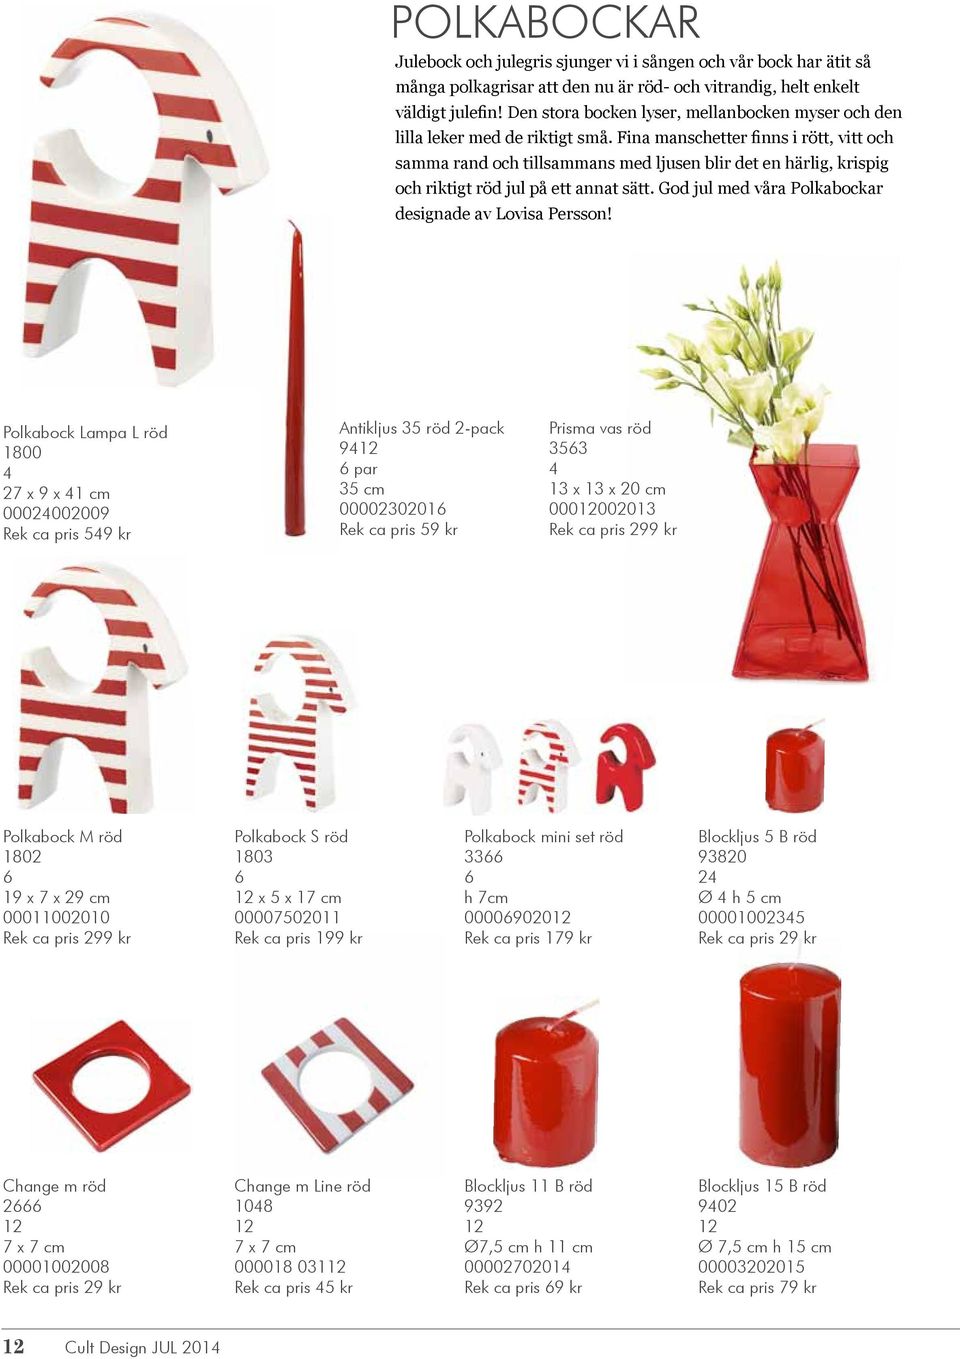 Fina manschetter finns i rött, vitt och samma rand och tillsammans med ljusen blir det en härlig, krispig och riktigt röd jul på ett annat sätt.